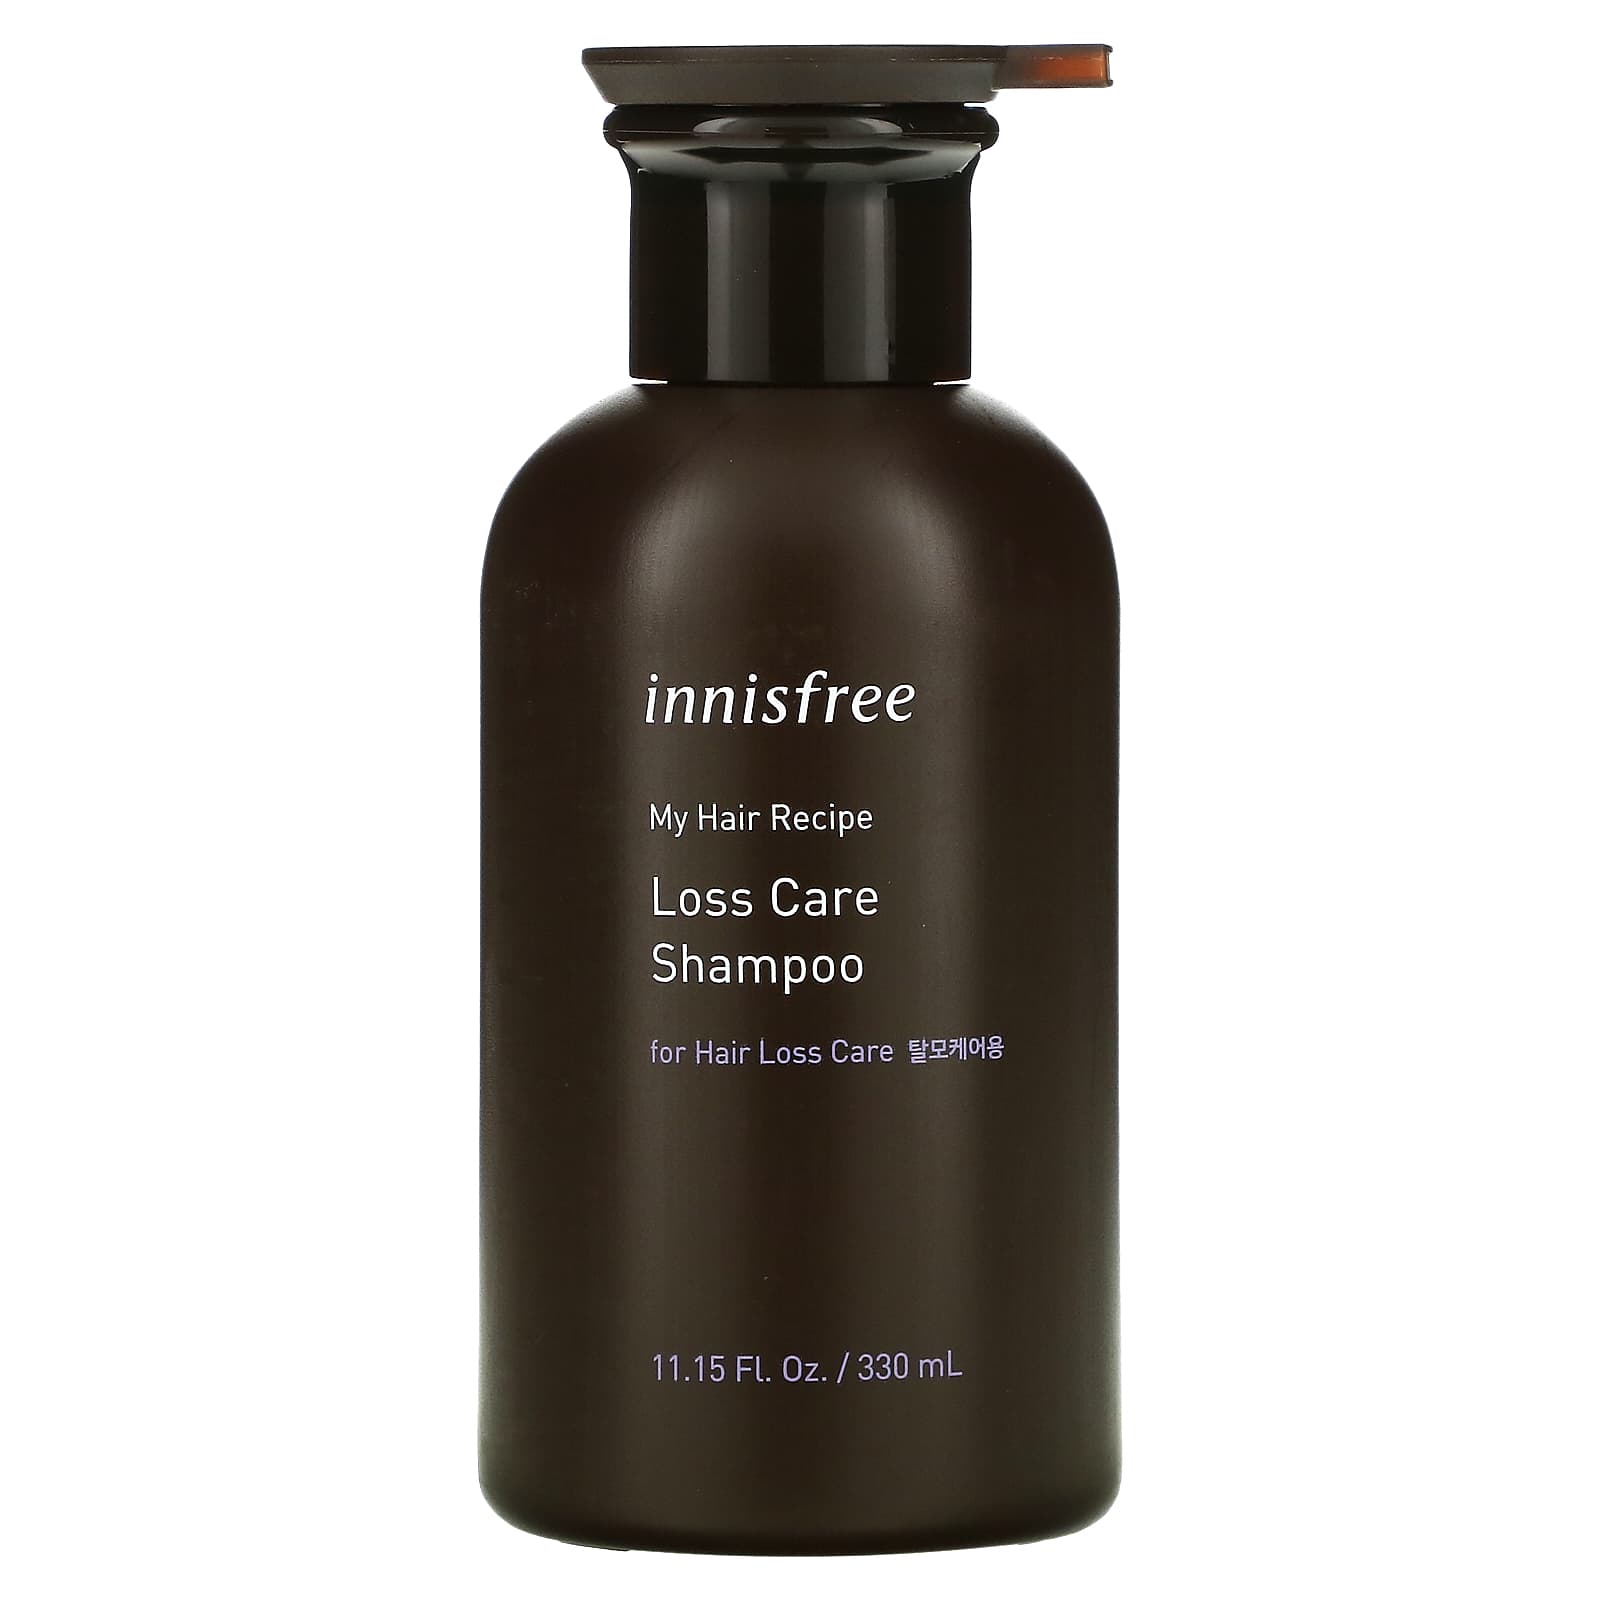 Innisfree, My Hair Recipe Loss Care Shampoo